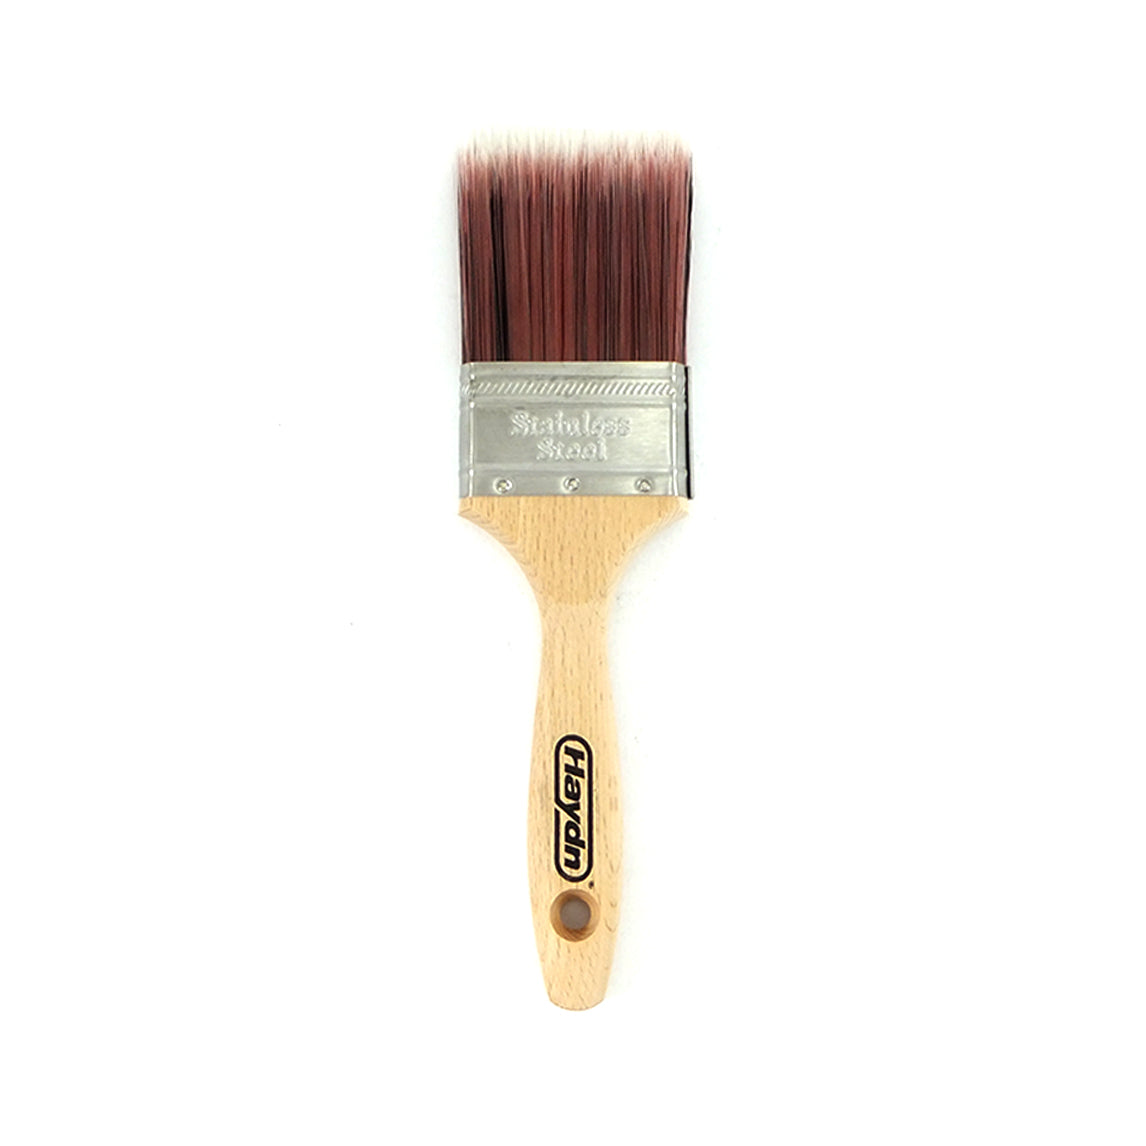 Excalibur Paint Brush